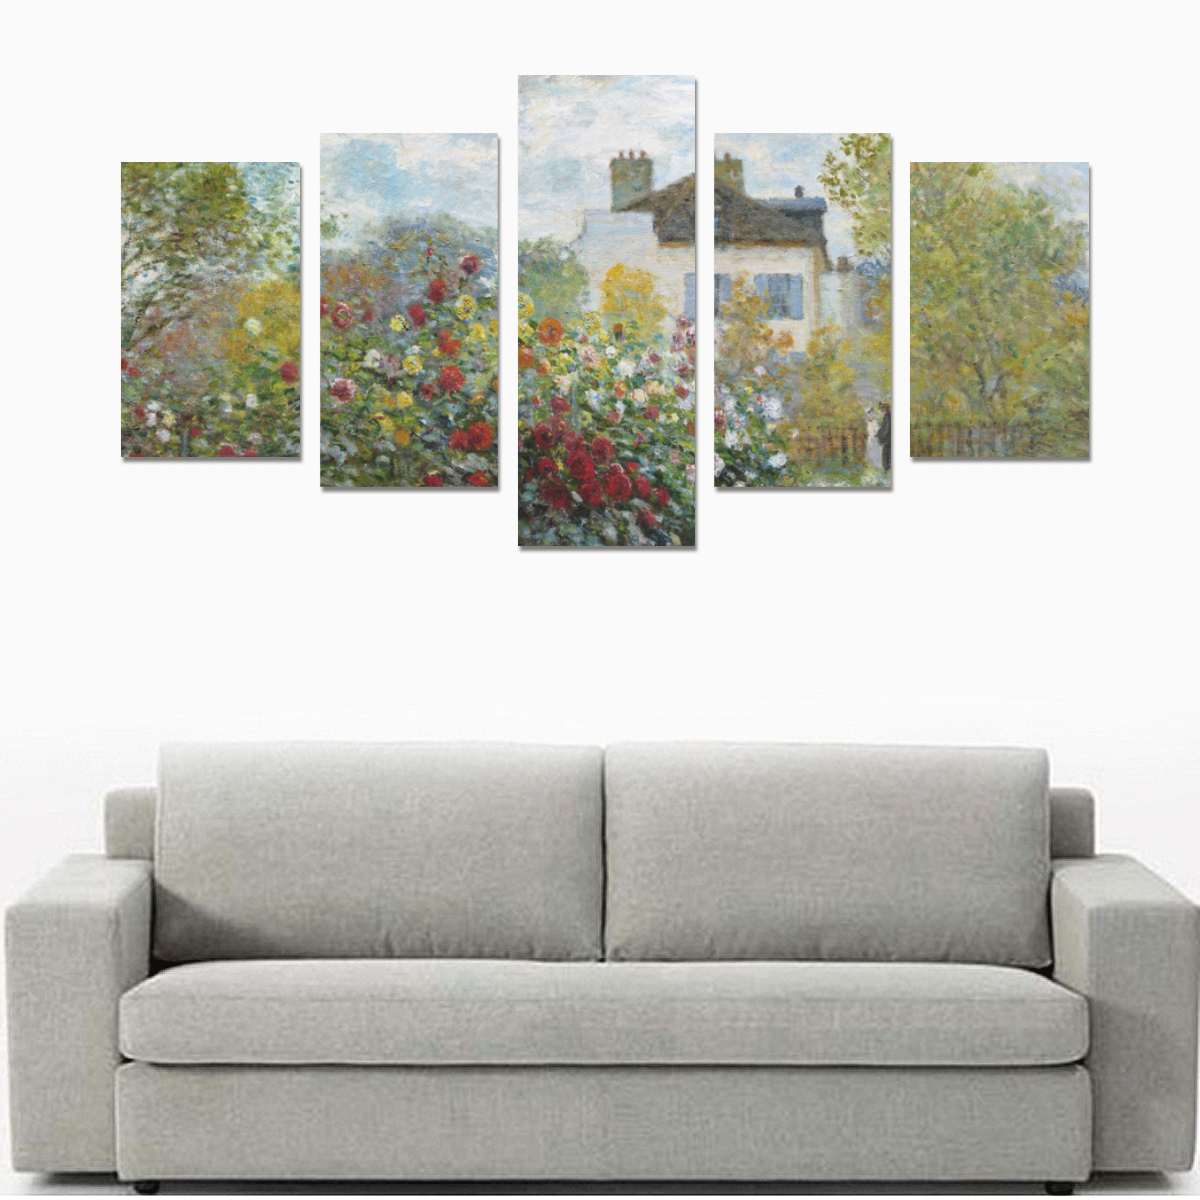 Monet Artist's Garden Argenteuil Floral Landscape Canvas Print Sets C (No Frame)